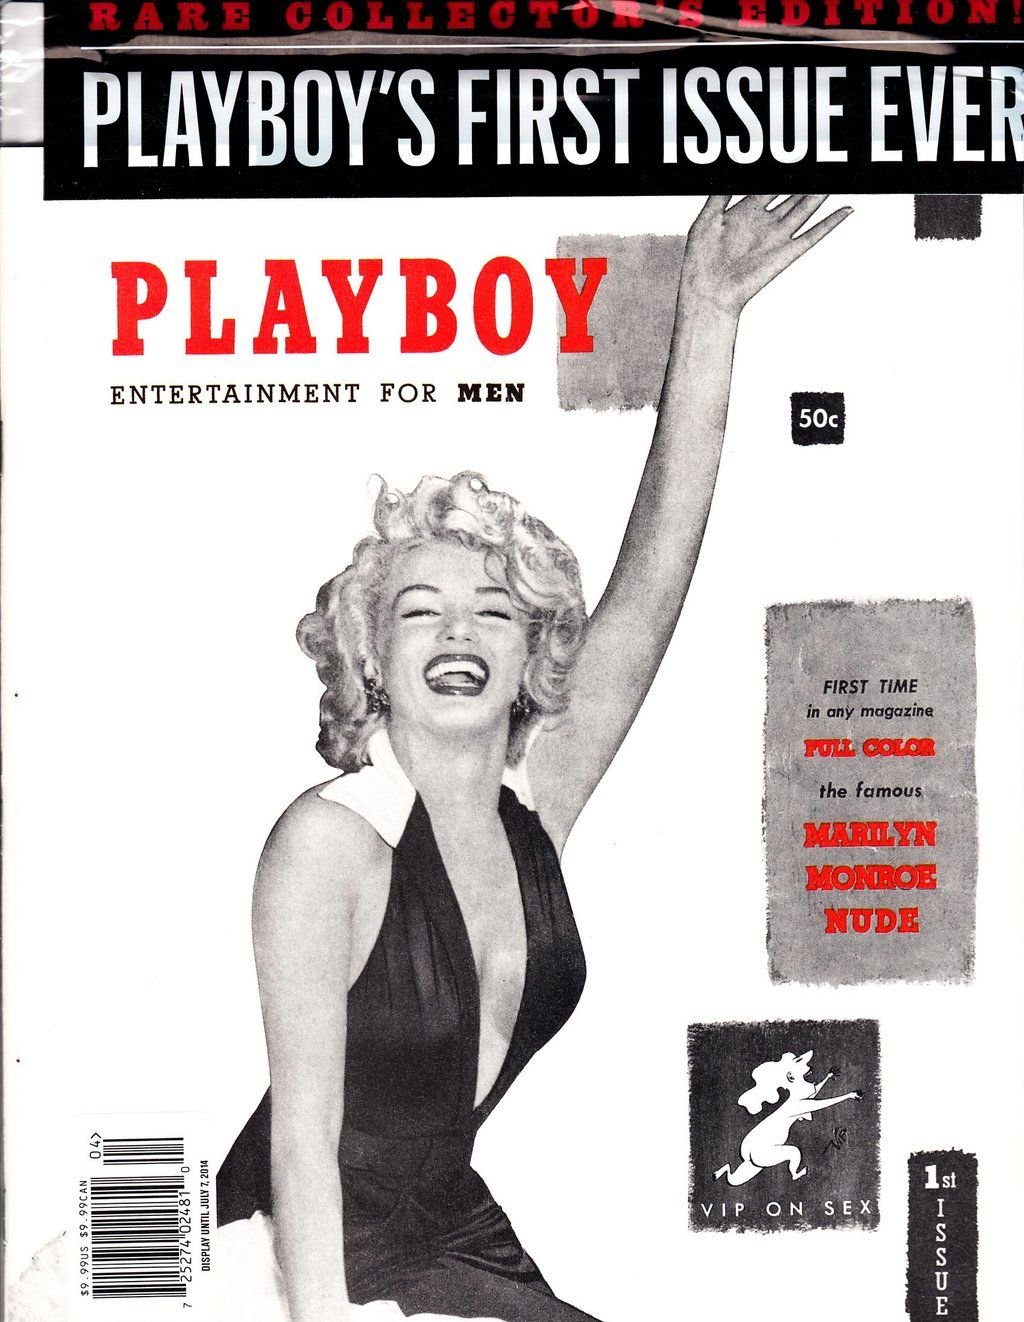 Capa da primeira edição da Playboy que trazia fotos inéditas de Marilyn Monroe